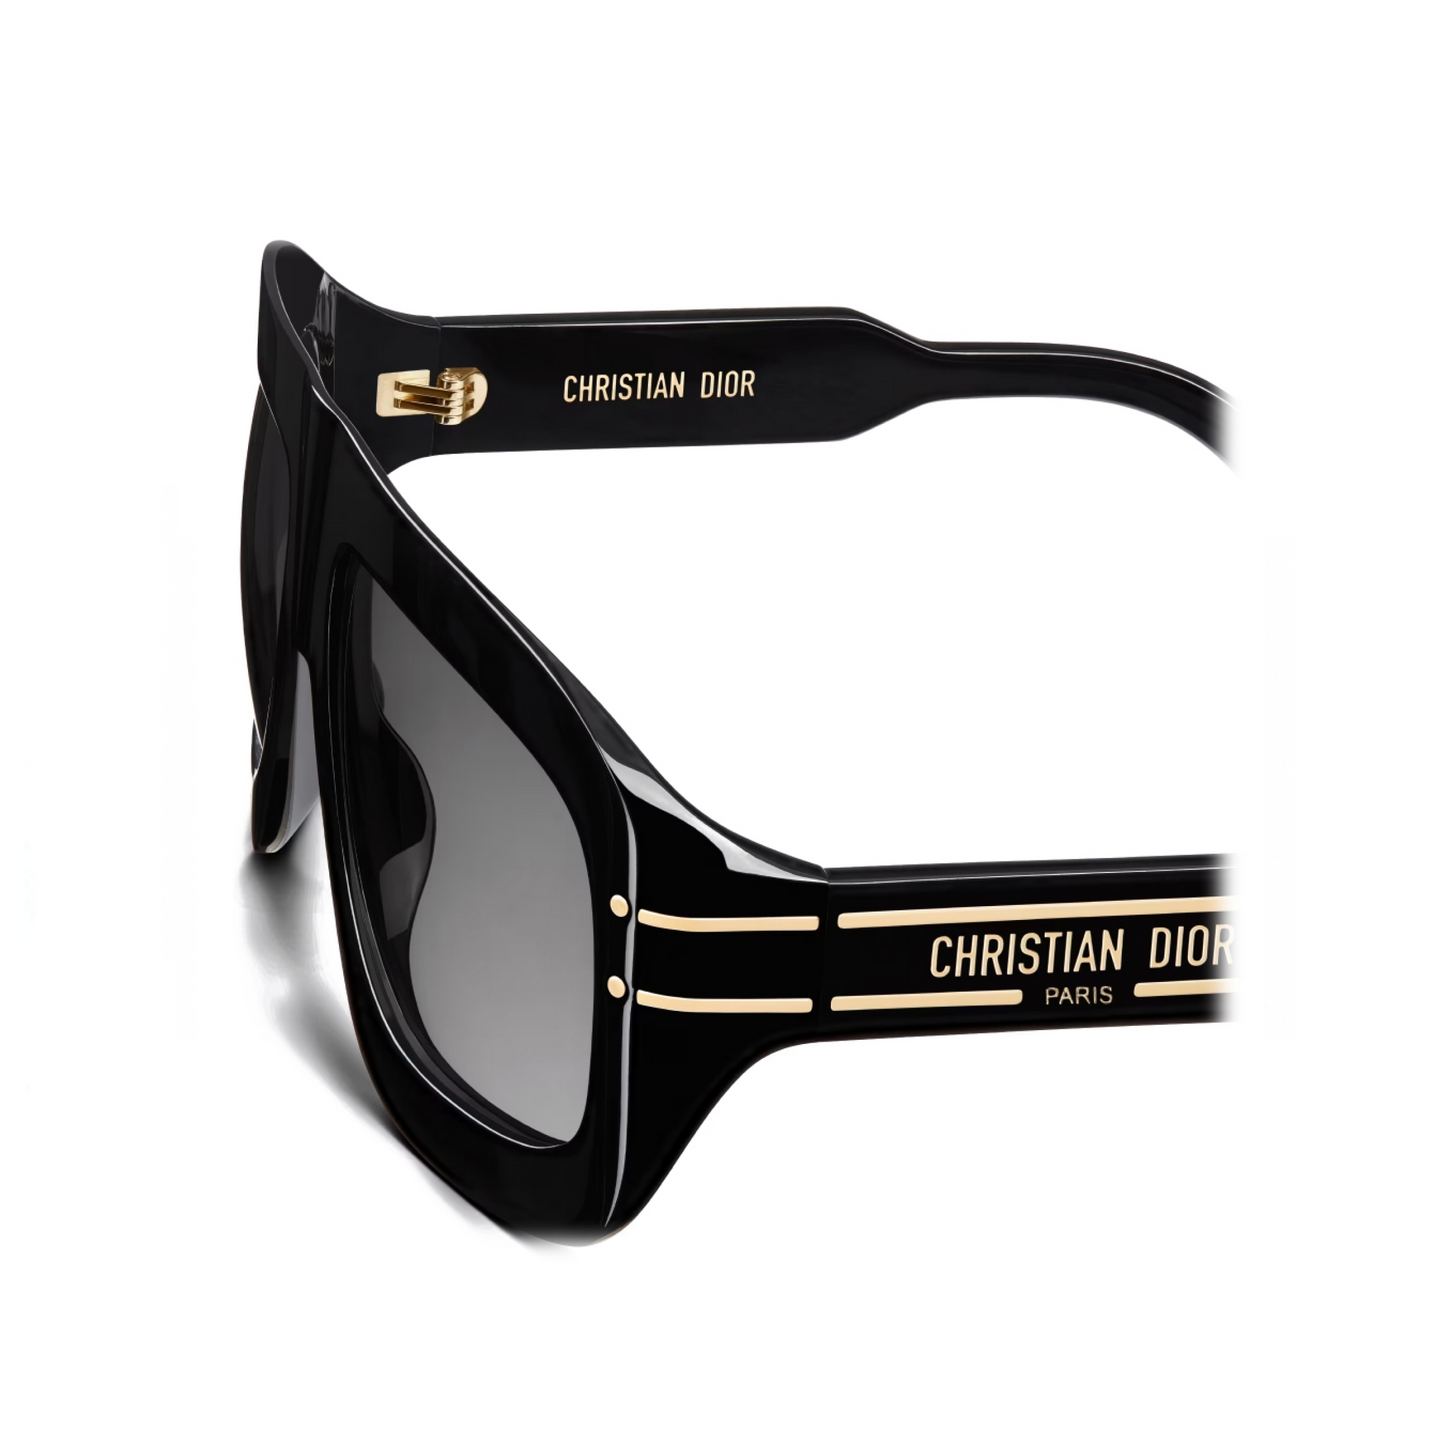 DiorSignature M1U 10A158 Sunglasses in Black